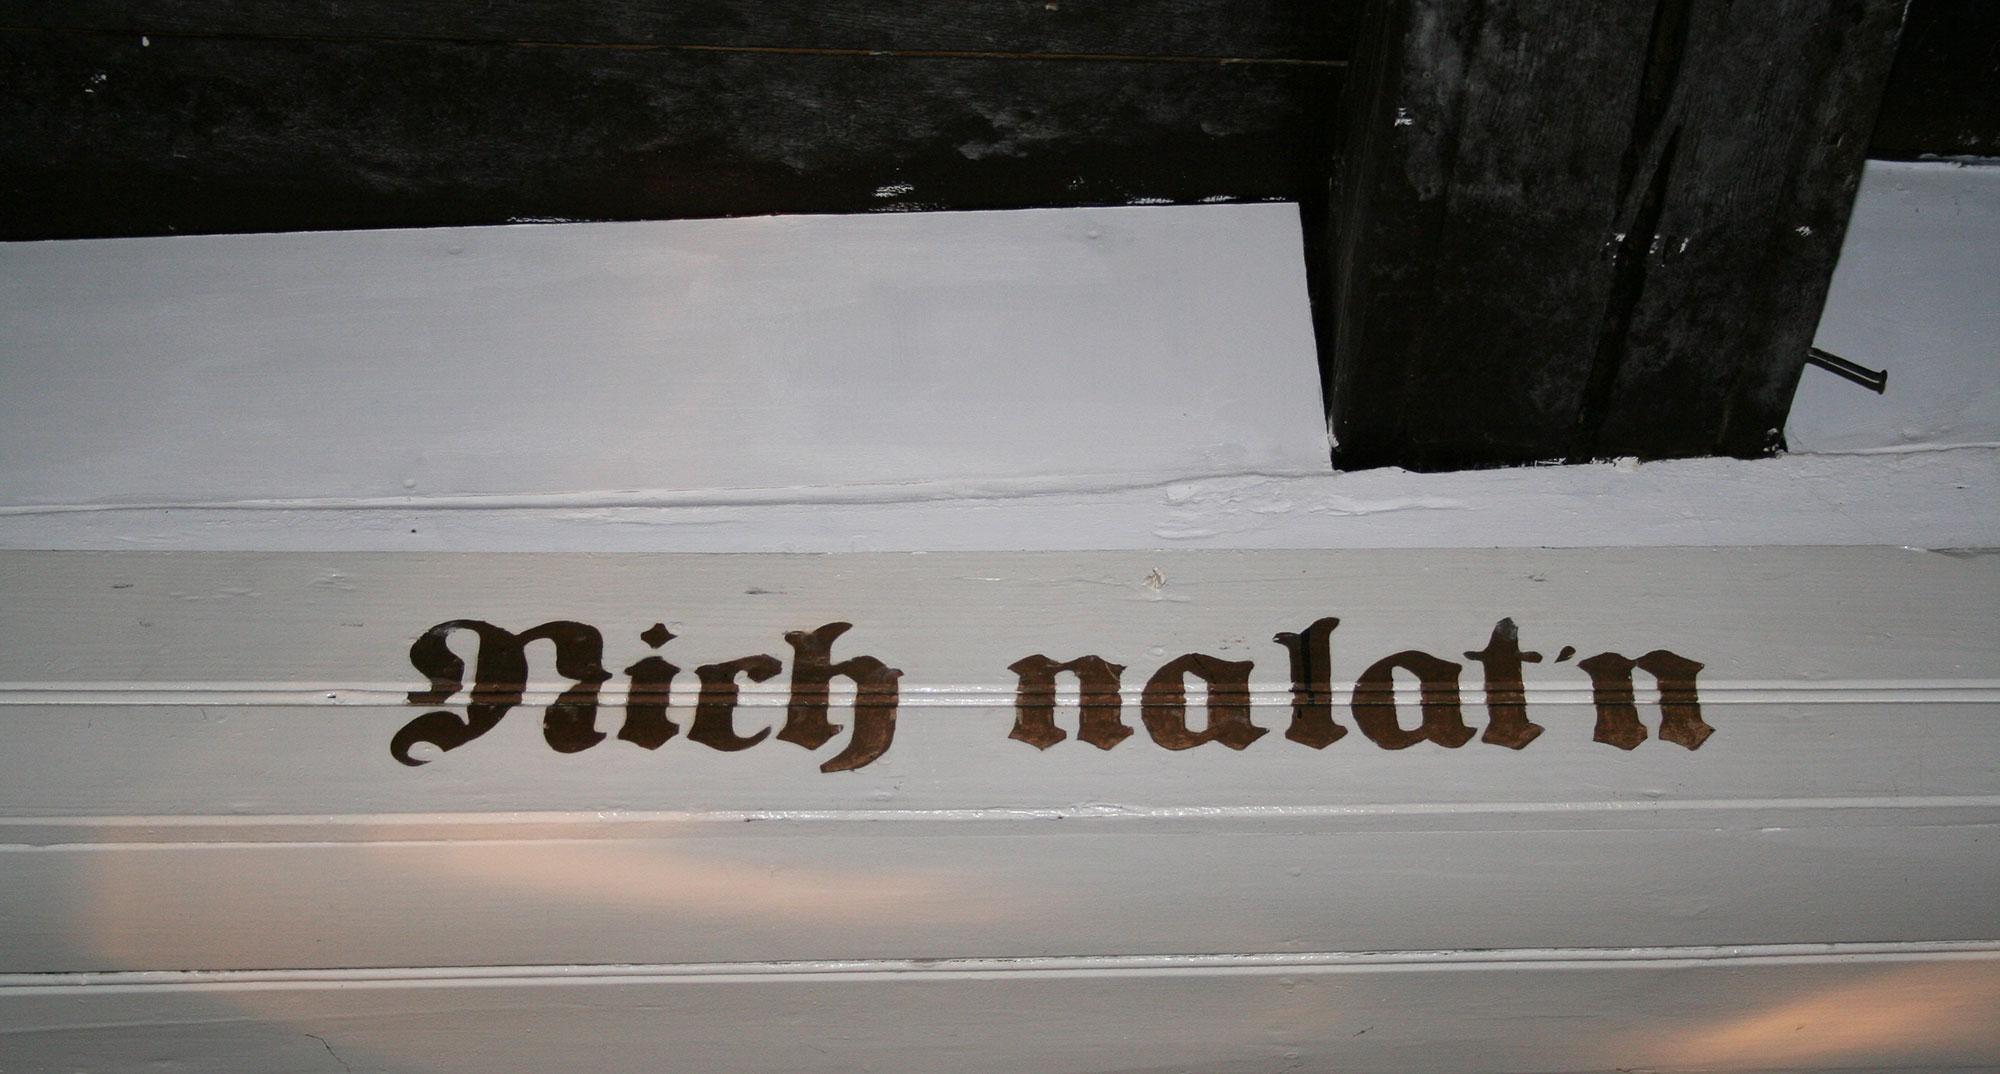 Schriftzug "Nich nalat'n"